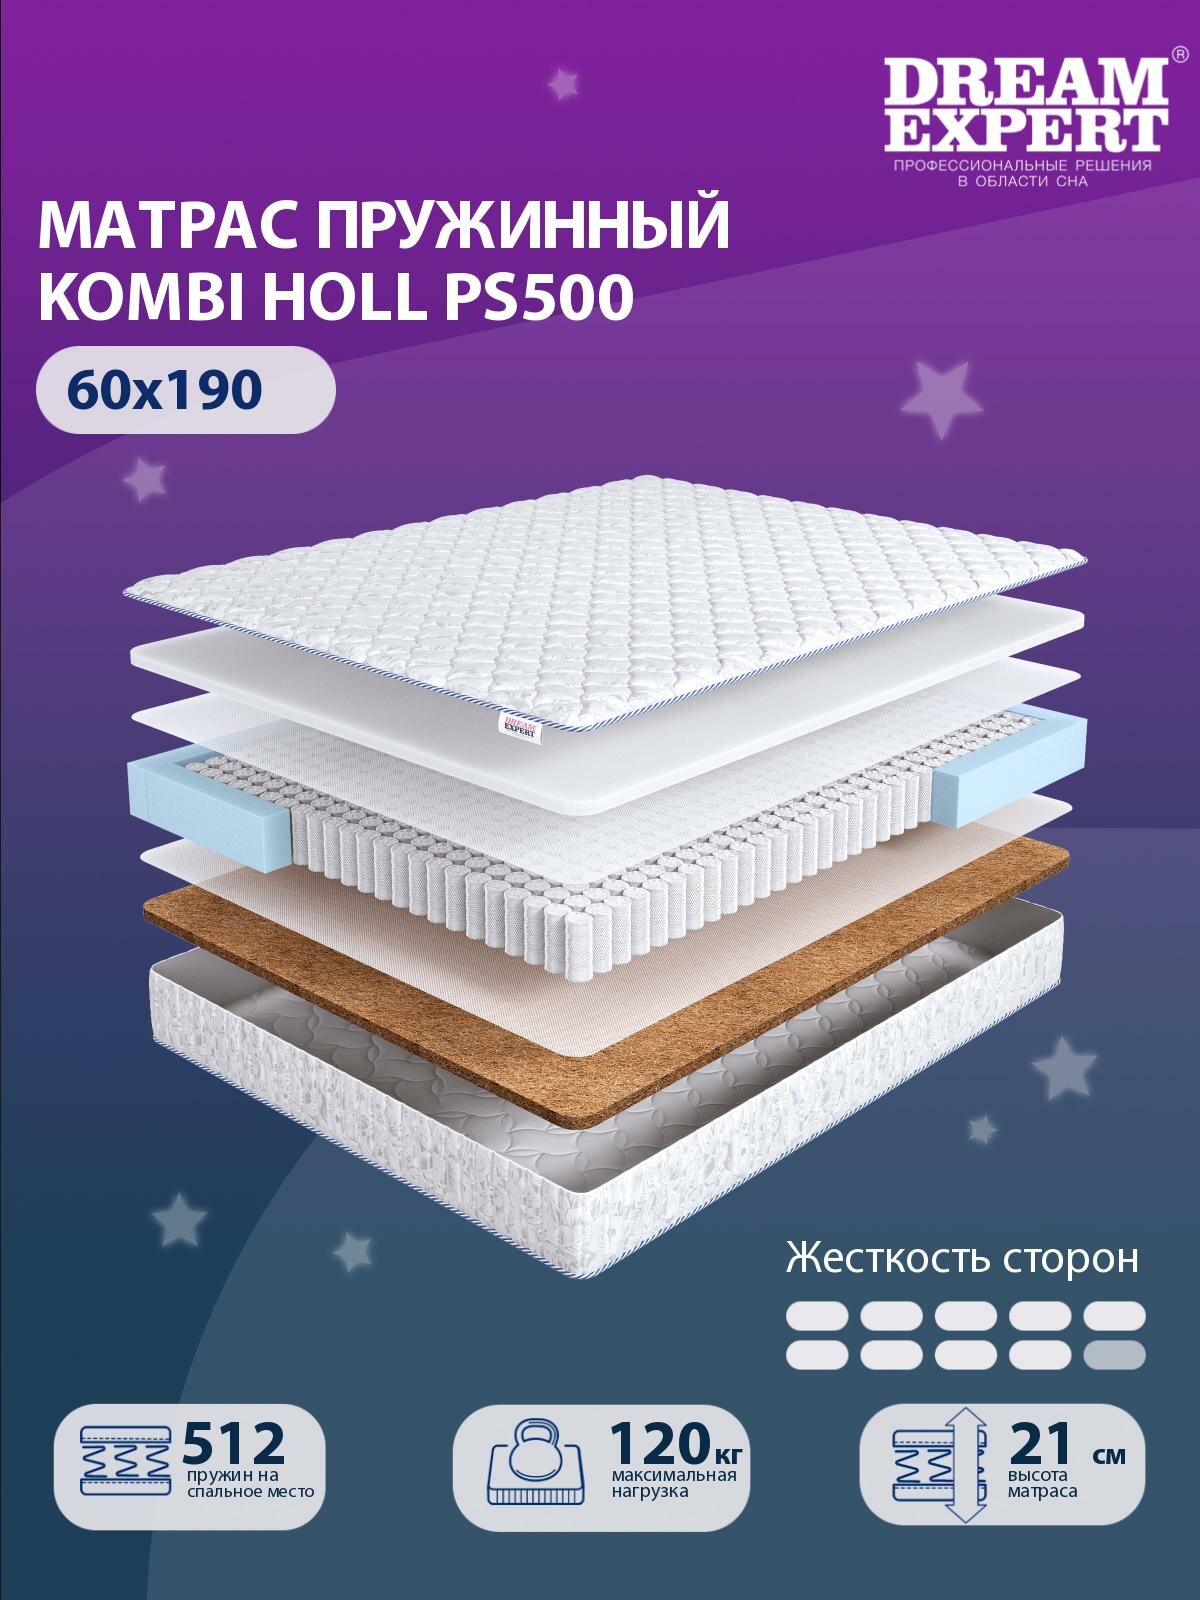 Матрас DreamExpert Kombi Holl PS500 жесткость высокая и выше средней, детский, независимый пружинный блок, на кровать 60x190